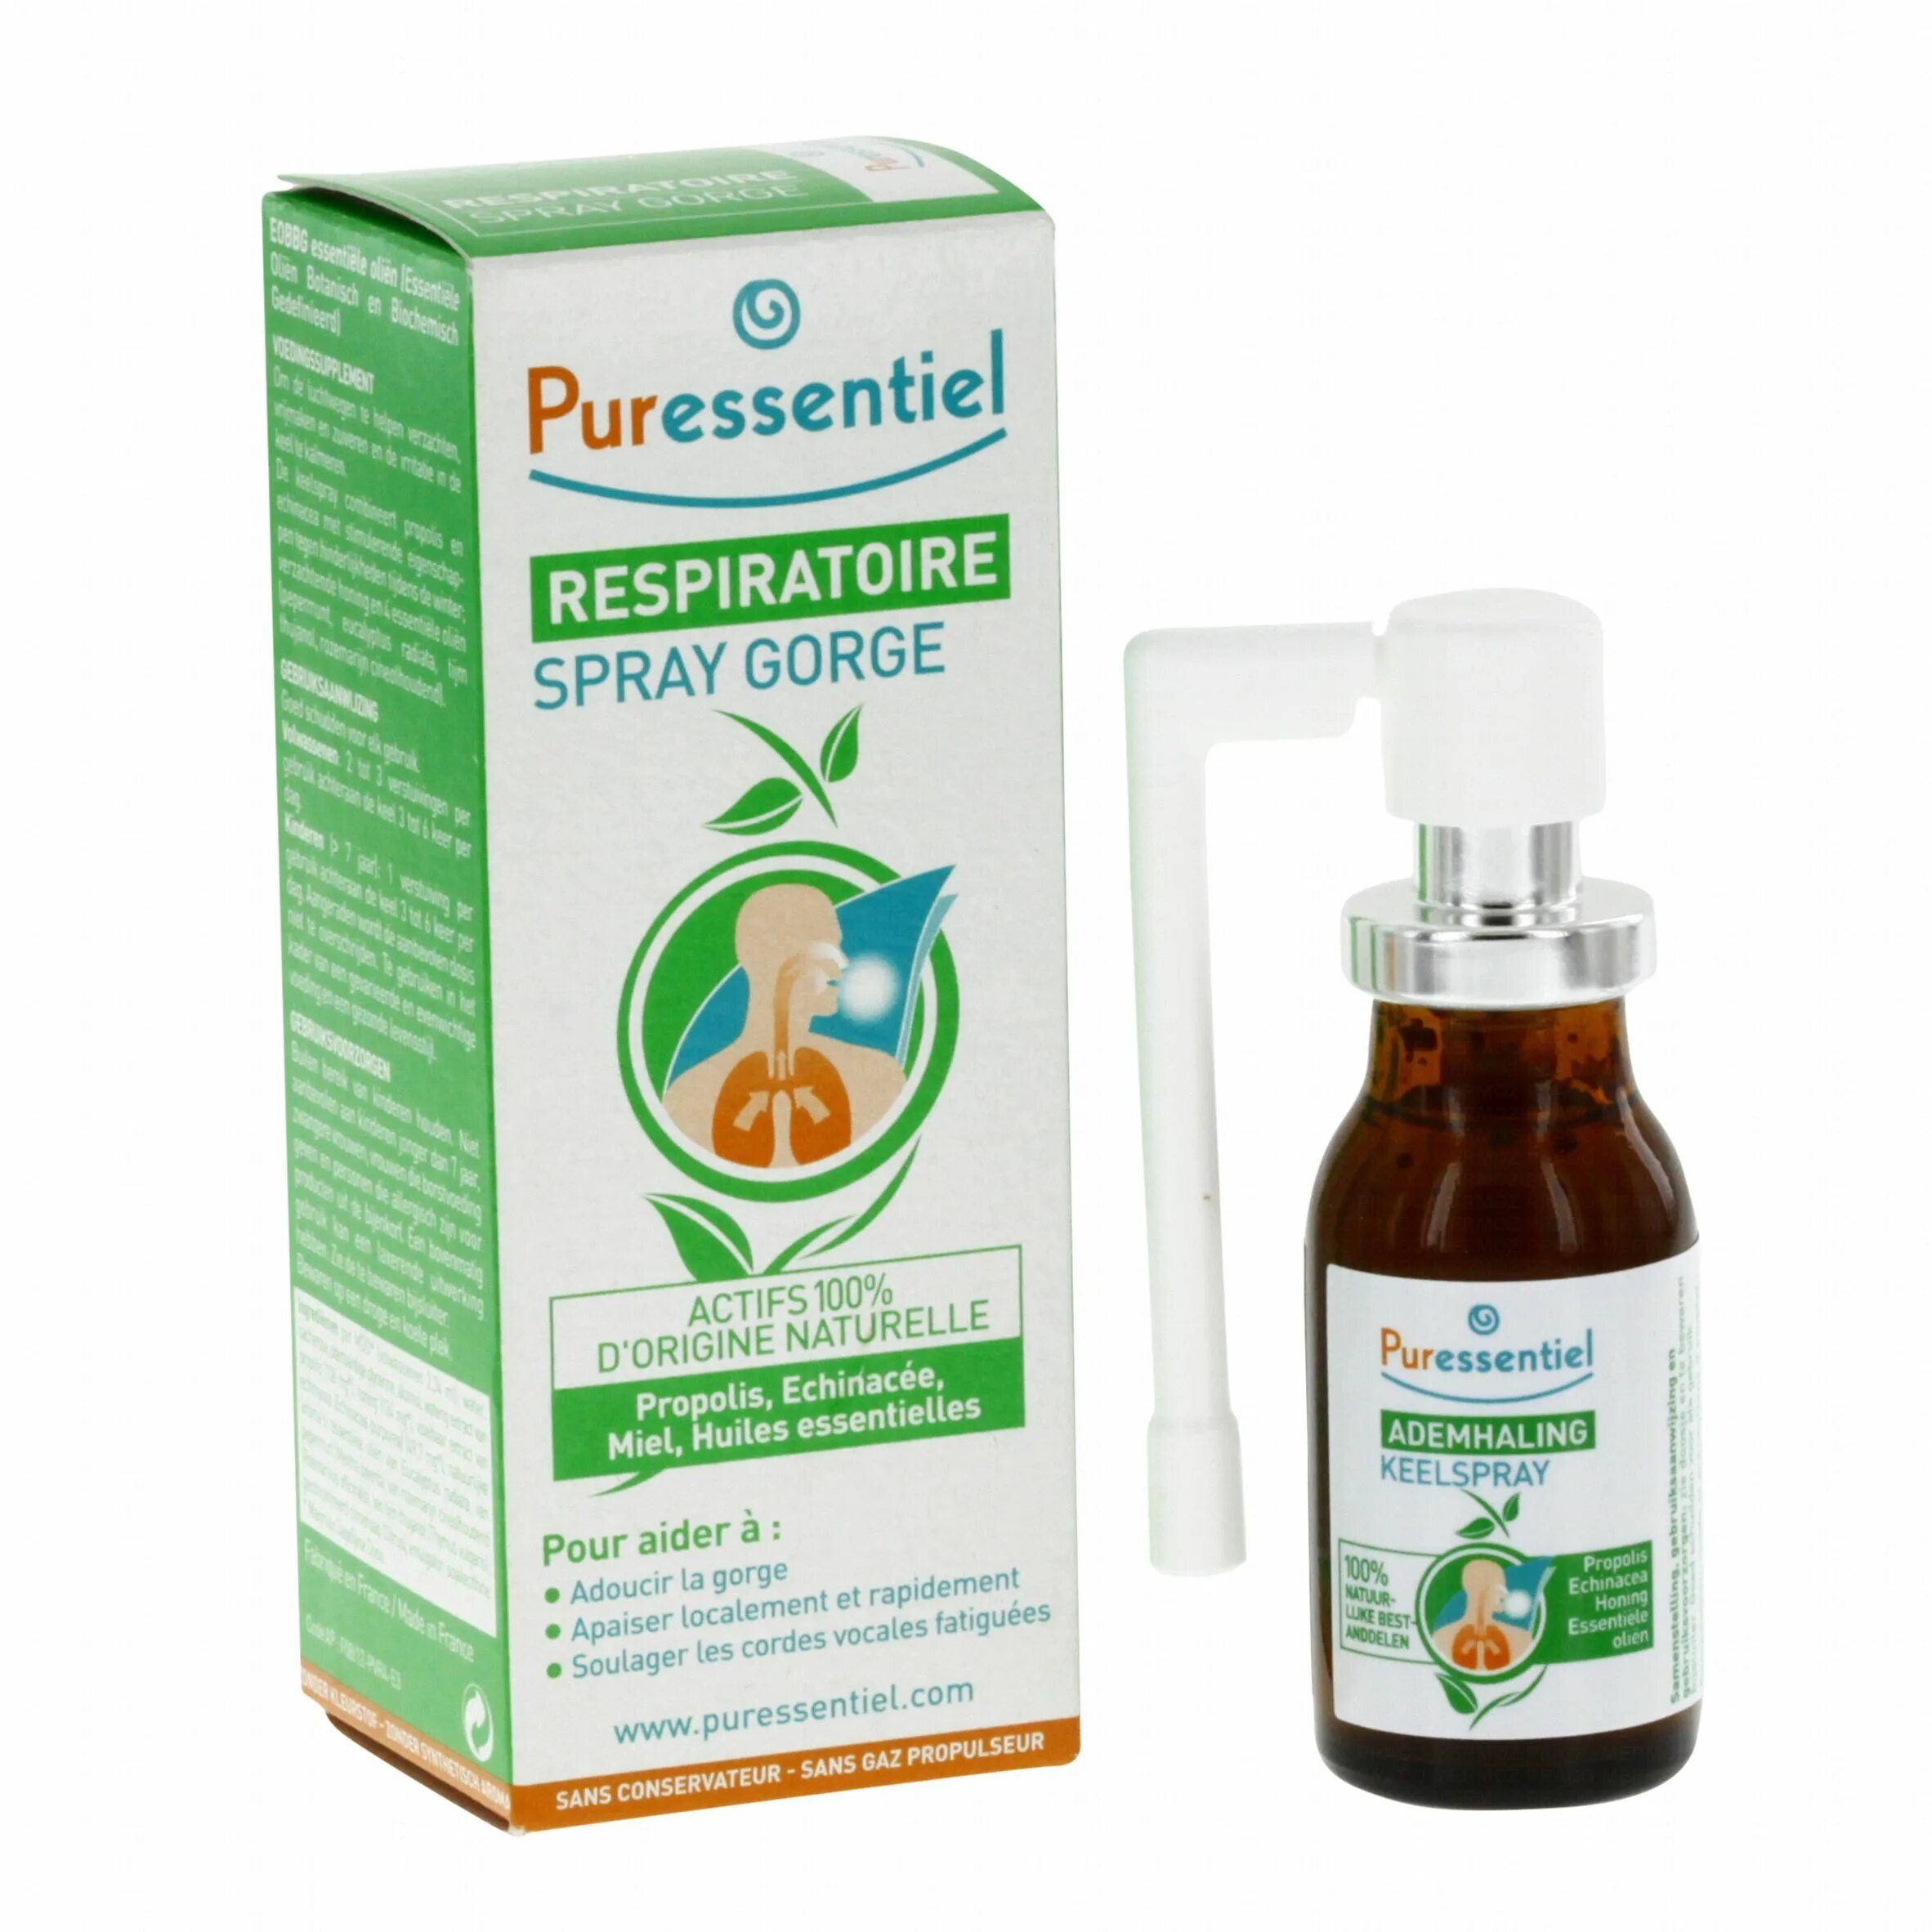 Puressentiel Respiratory throat Spray. Puressentiel Spray gorge. Puressentiel спрей. Puressentiel Spray gorge для горла.